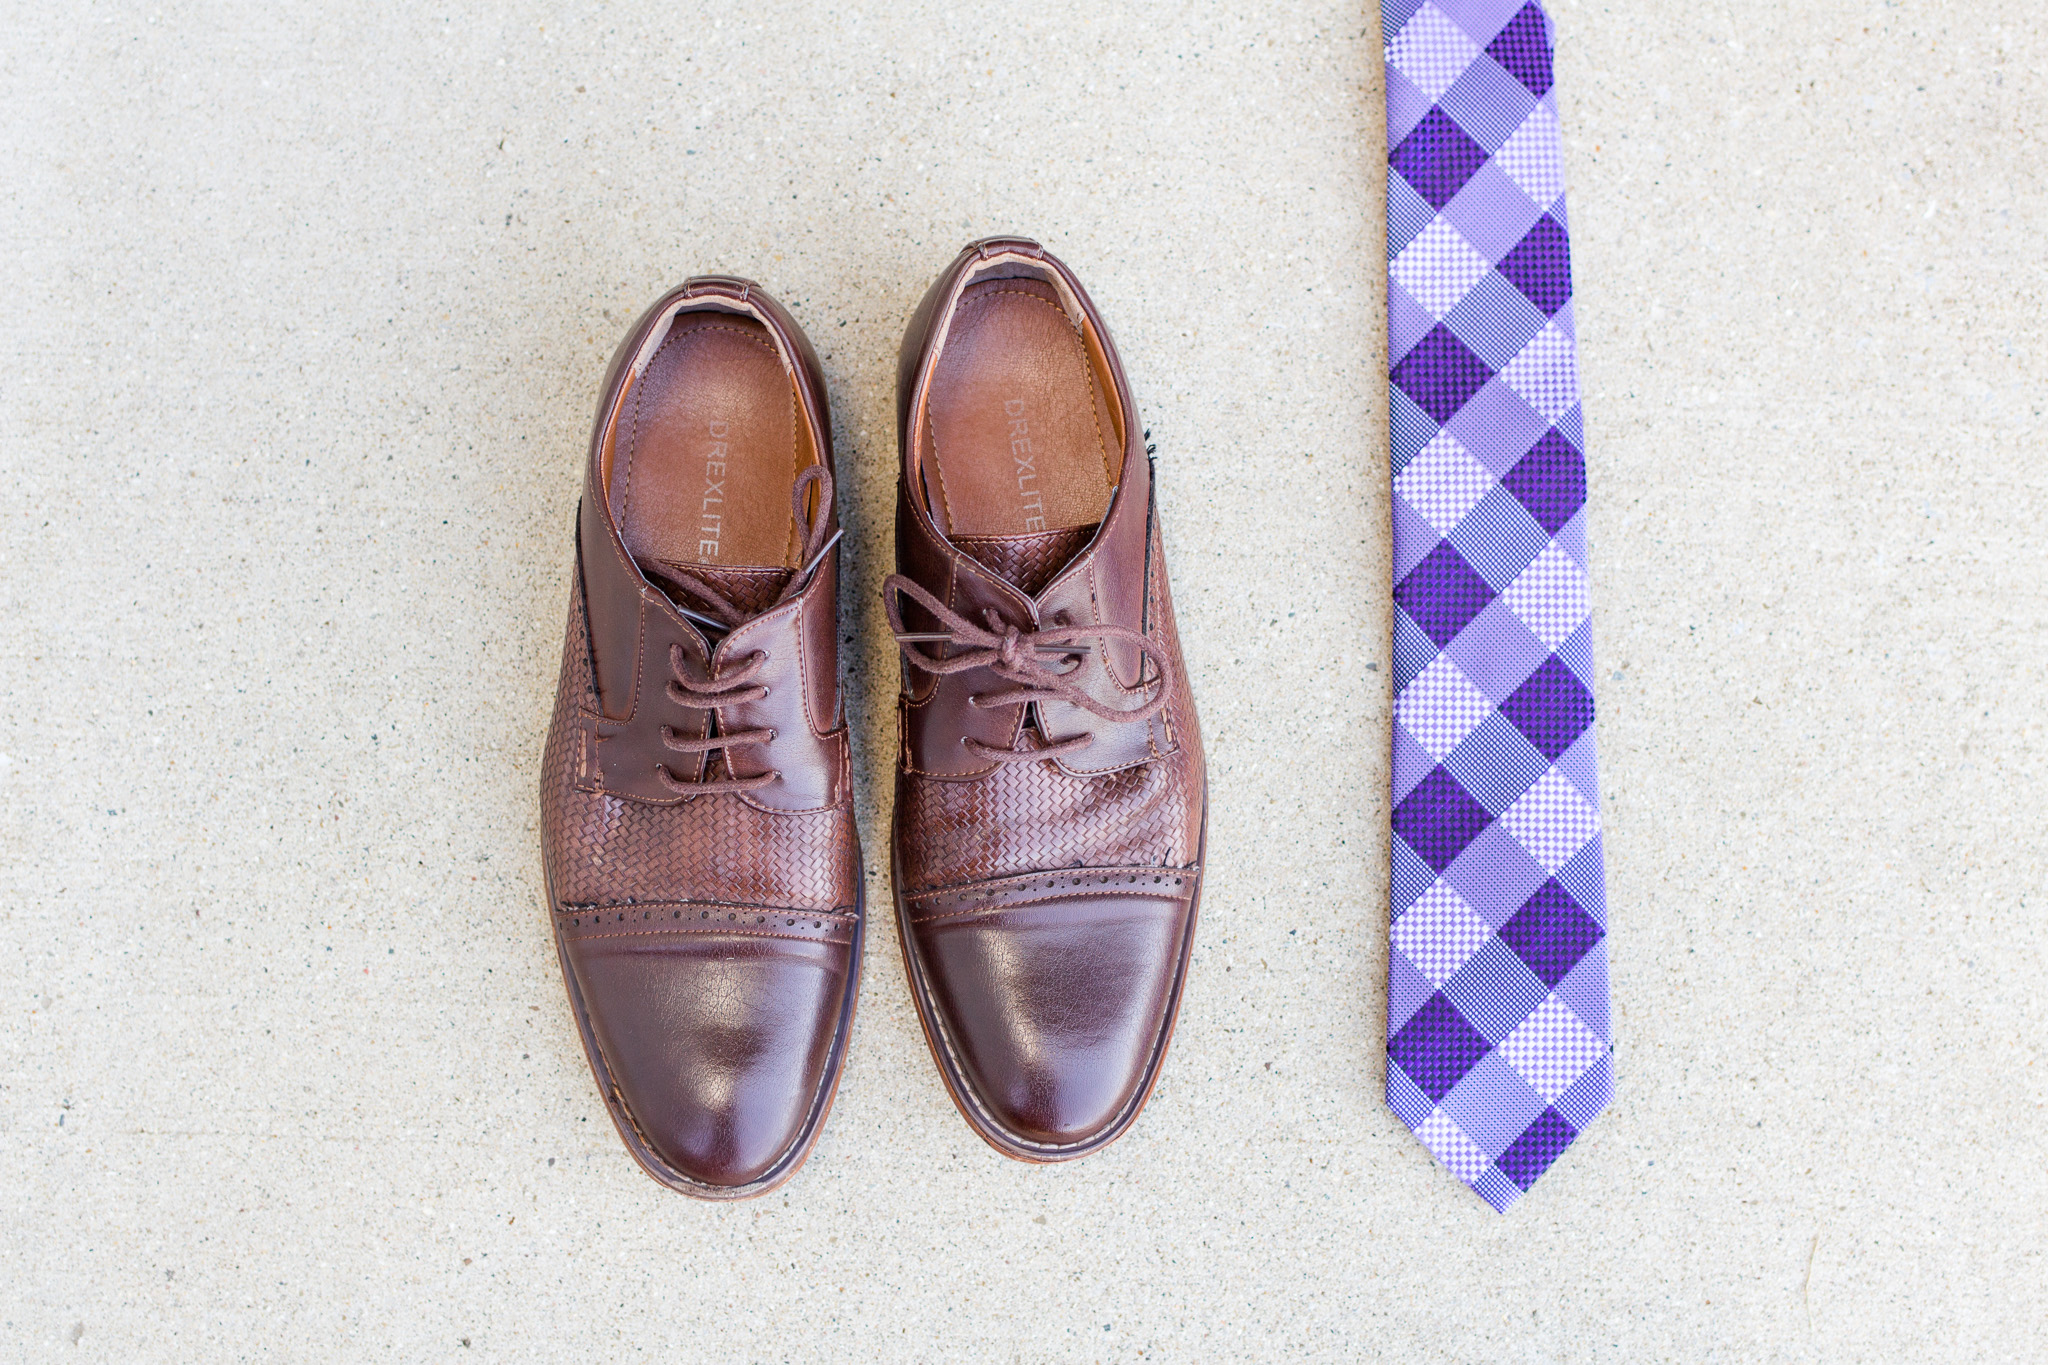 Dark brown groom's wedding shoes and purple tie